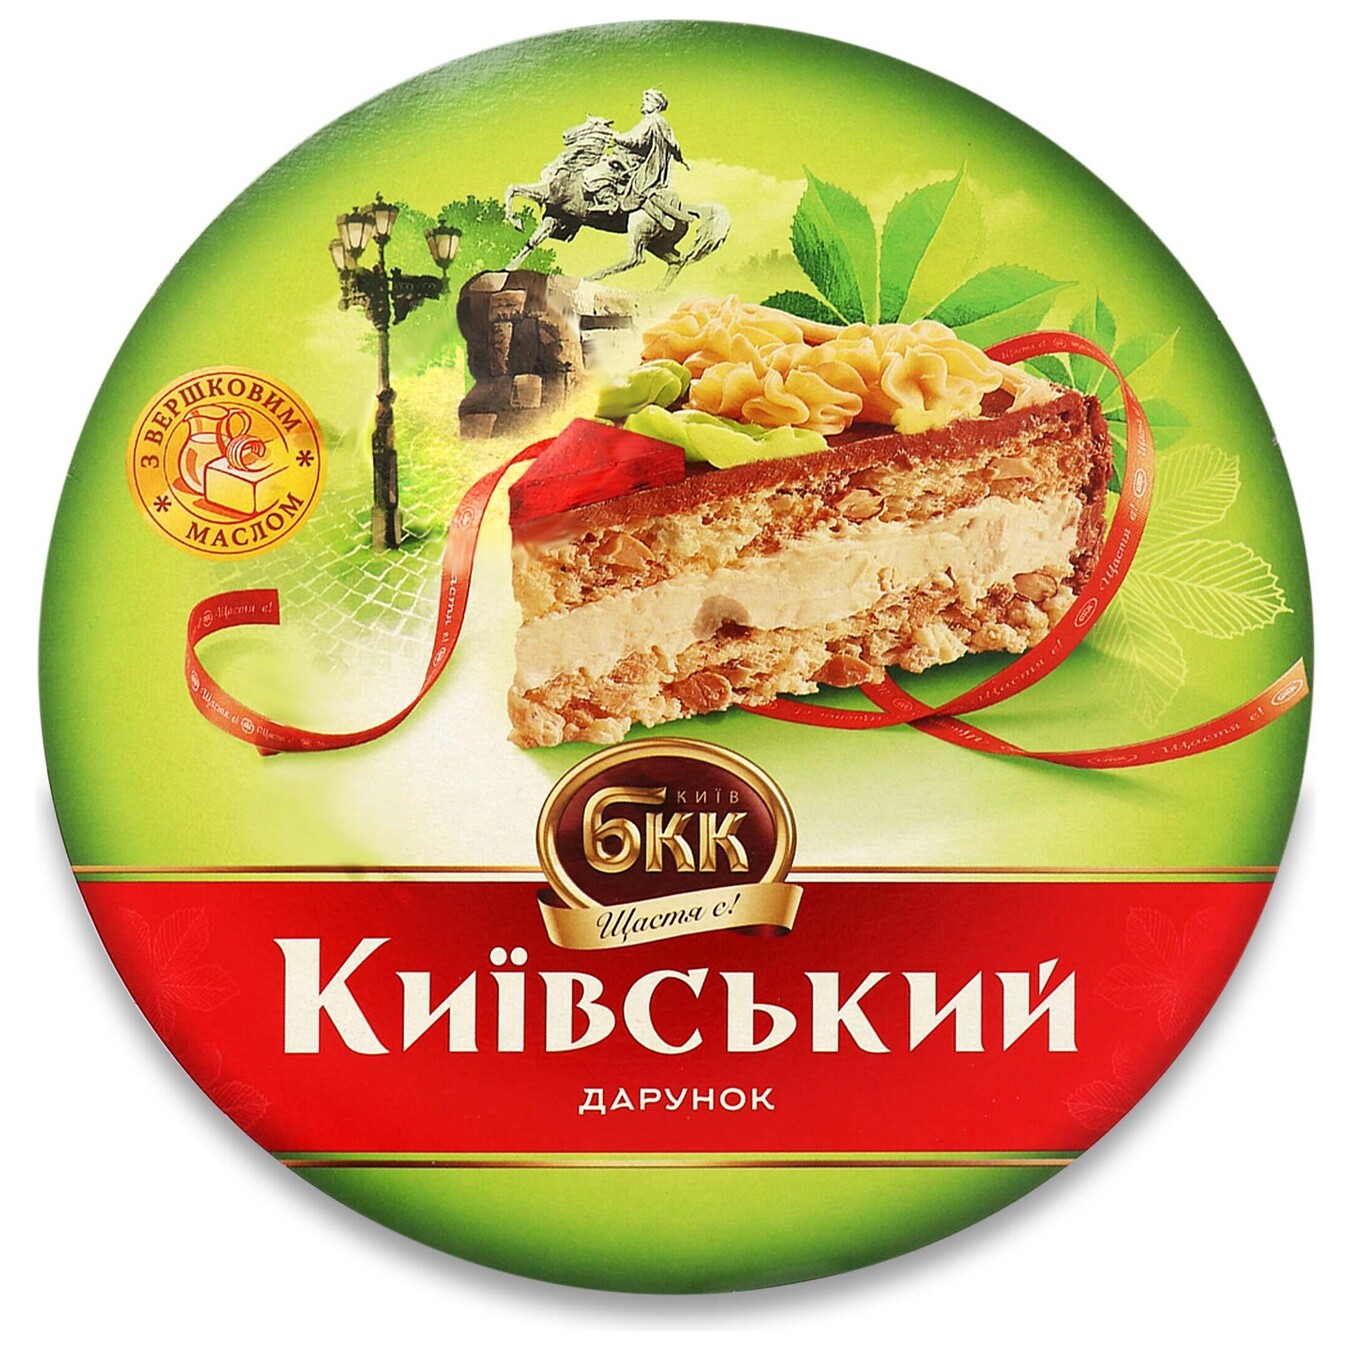 Торт БКК Київський дарунок з арахісом 450г